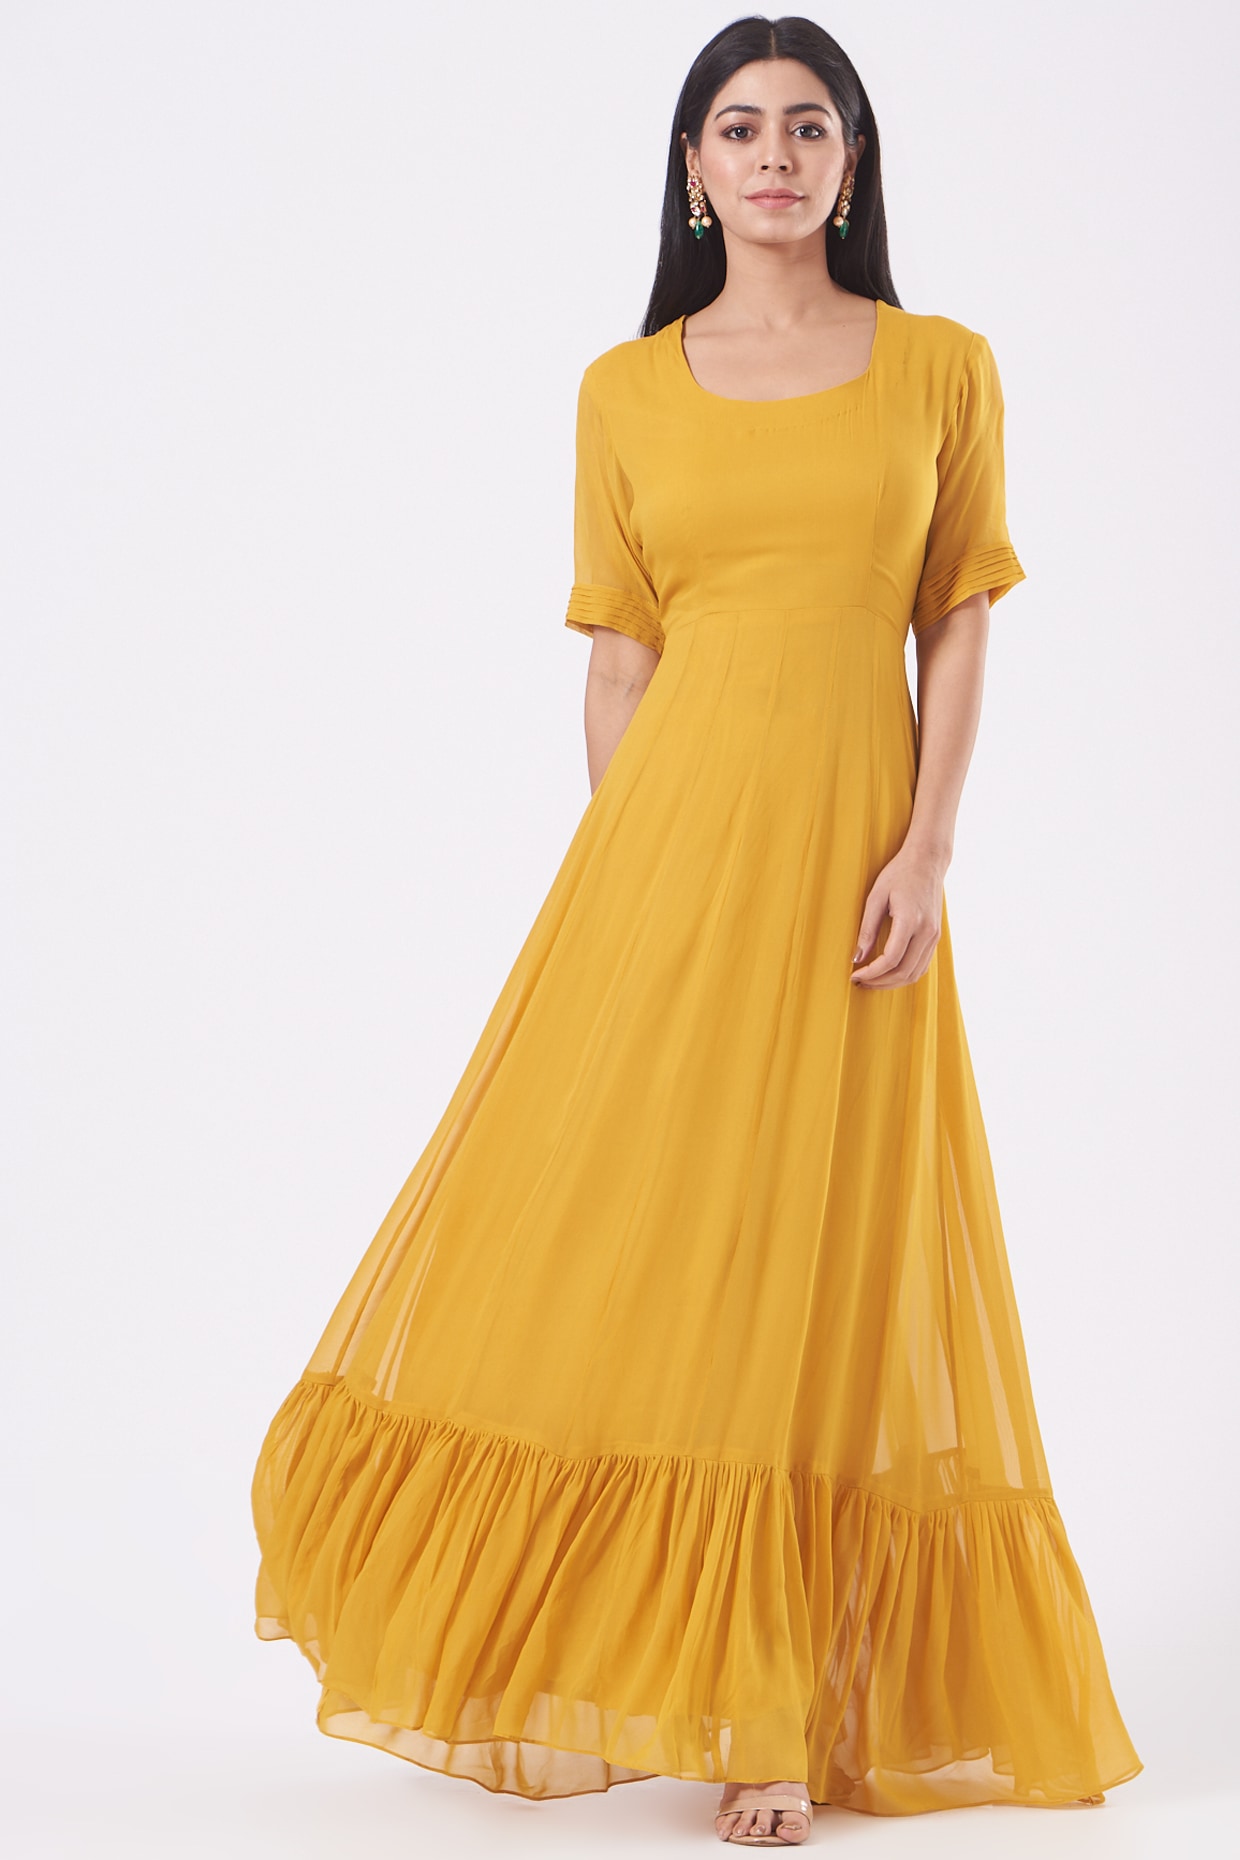 Light Peach Saree Georgette Saree thread Sequence Work Saree Wedding Wear  Dress | eBay